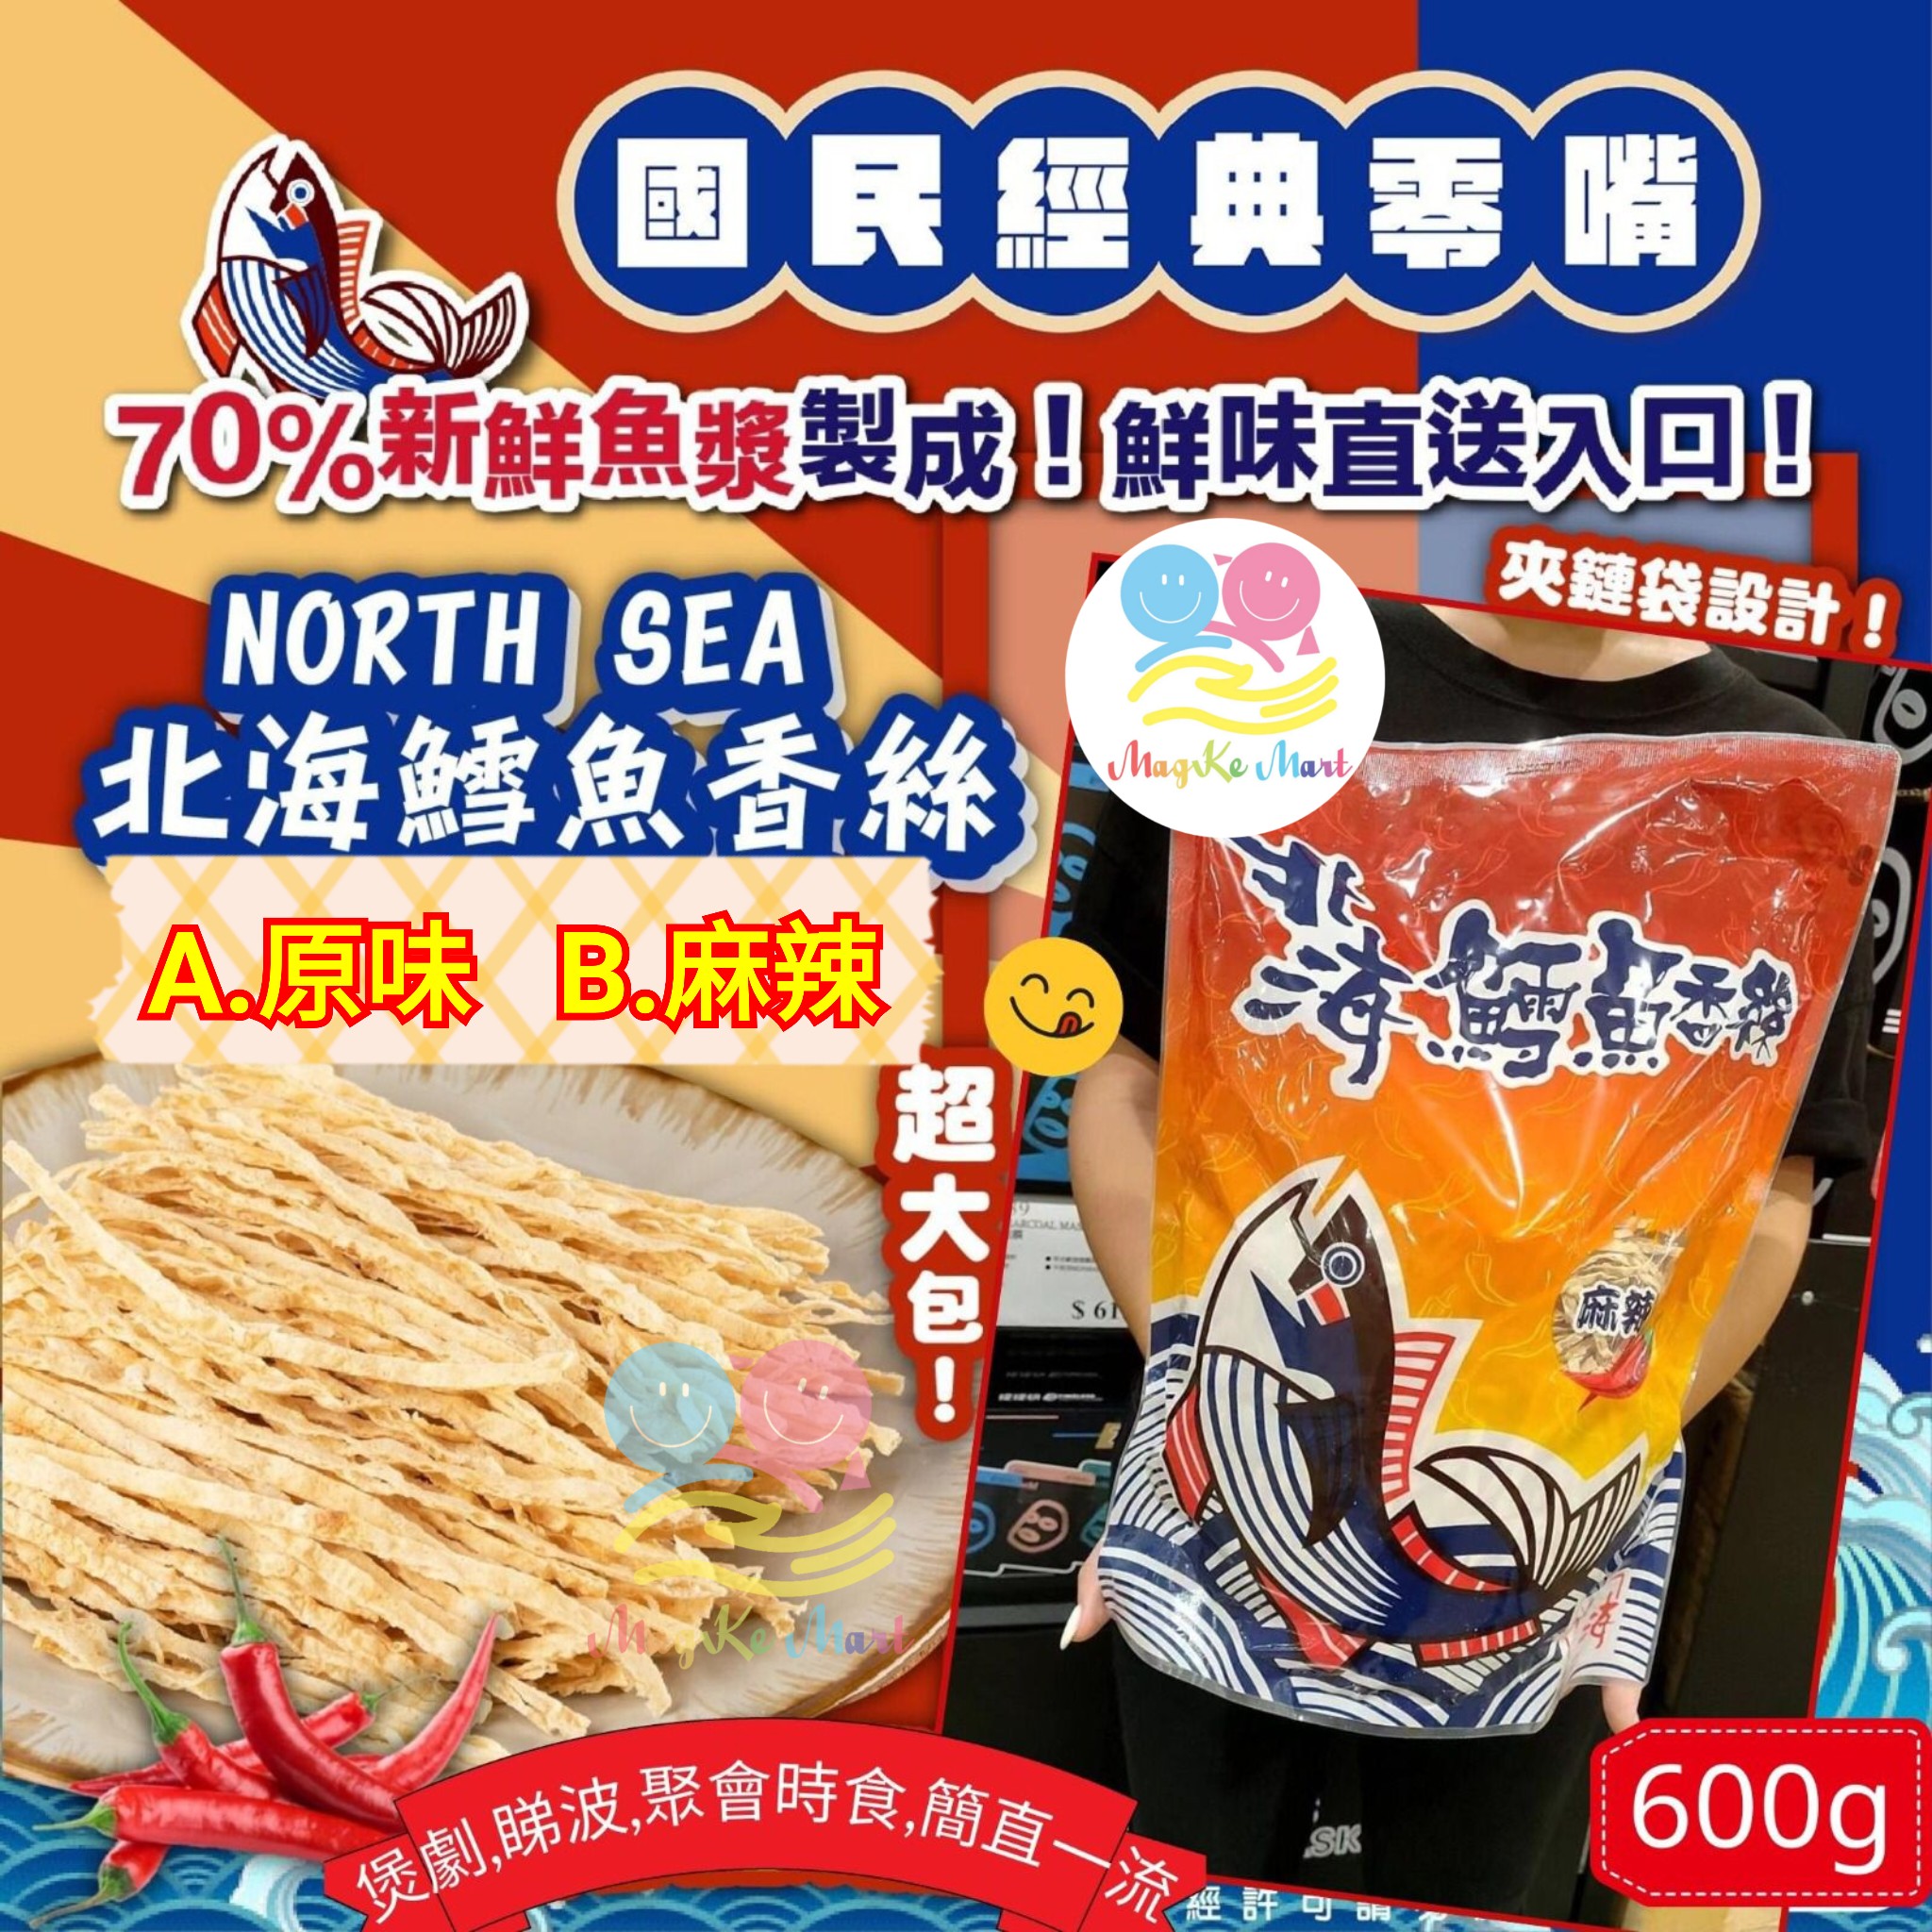 台灣北海鱈魚香絲系列 600g (B) 麻辣